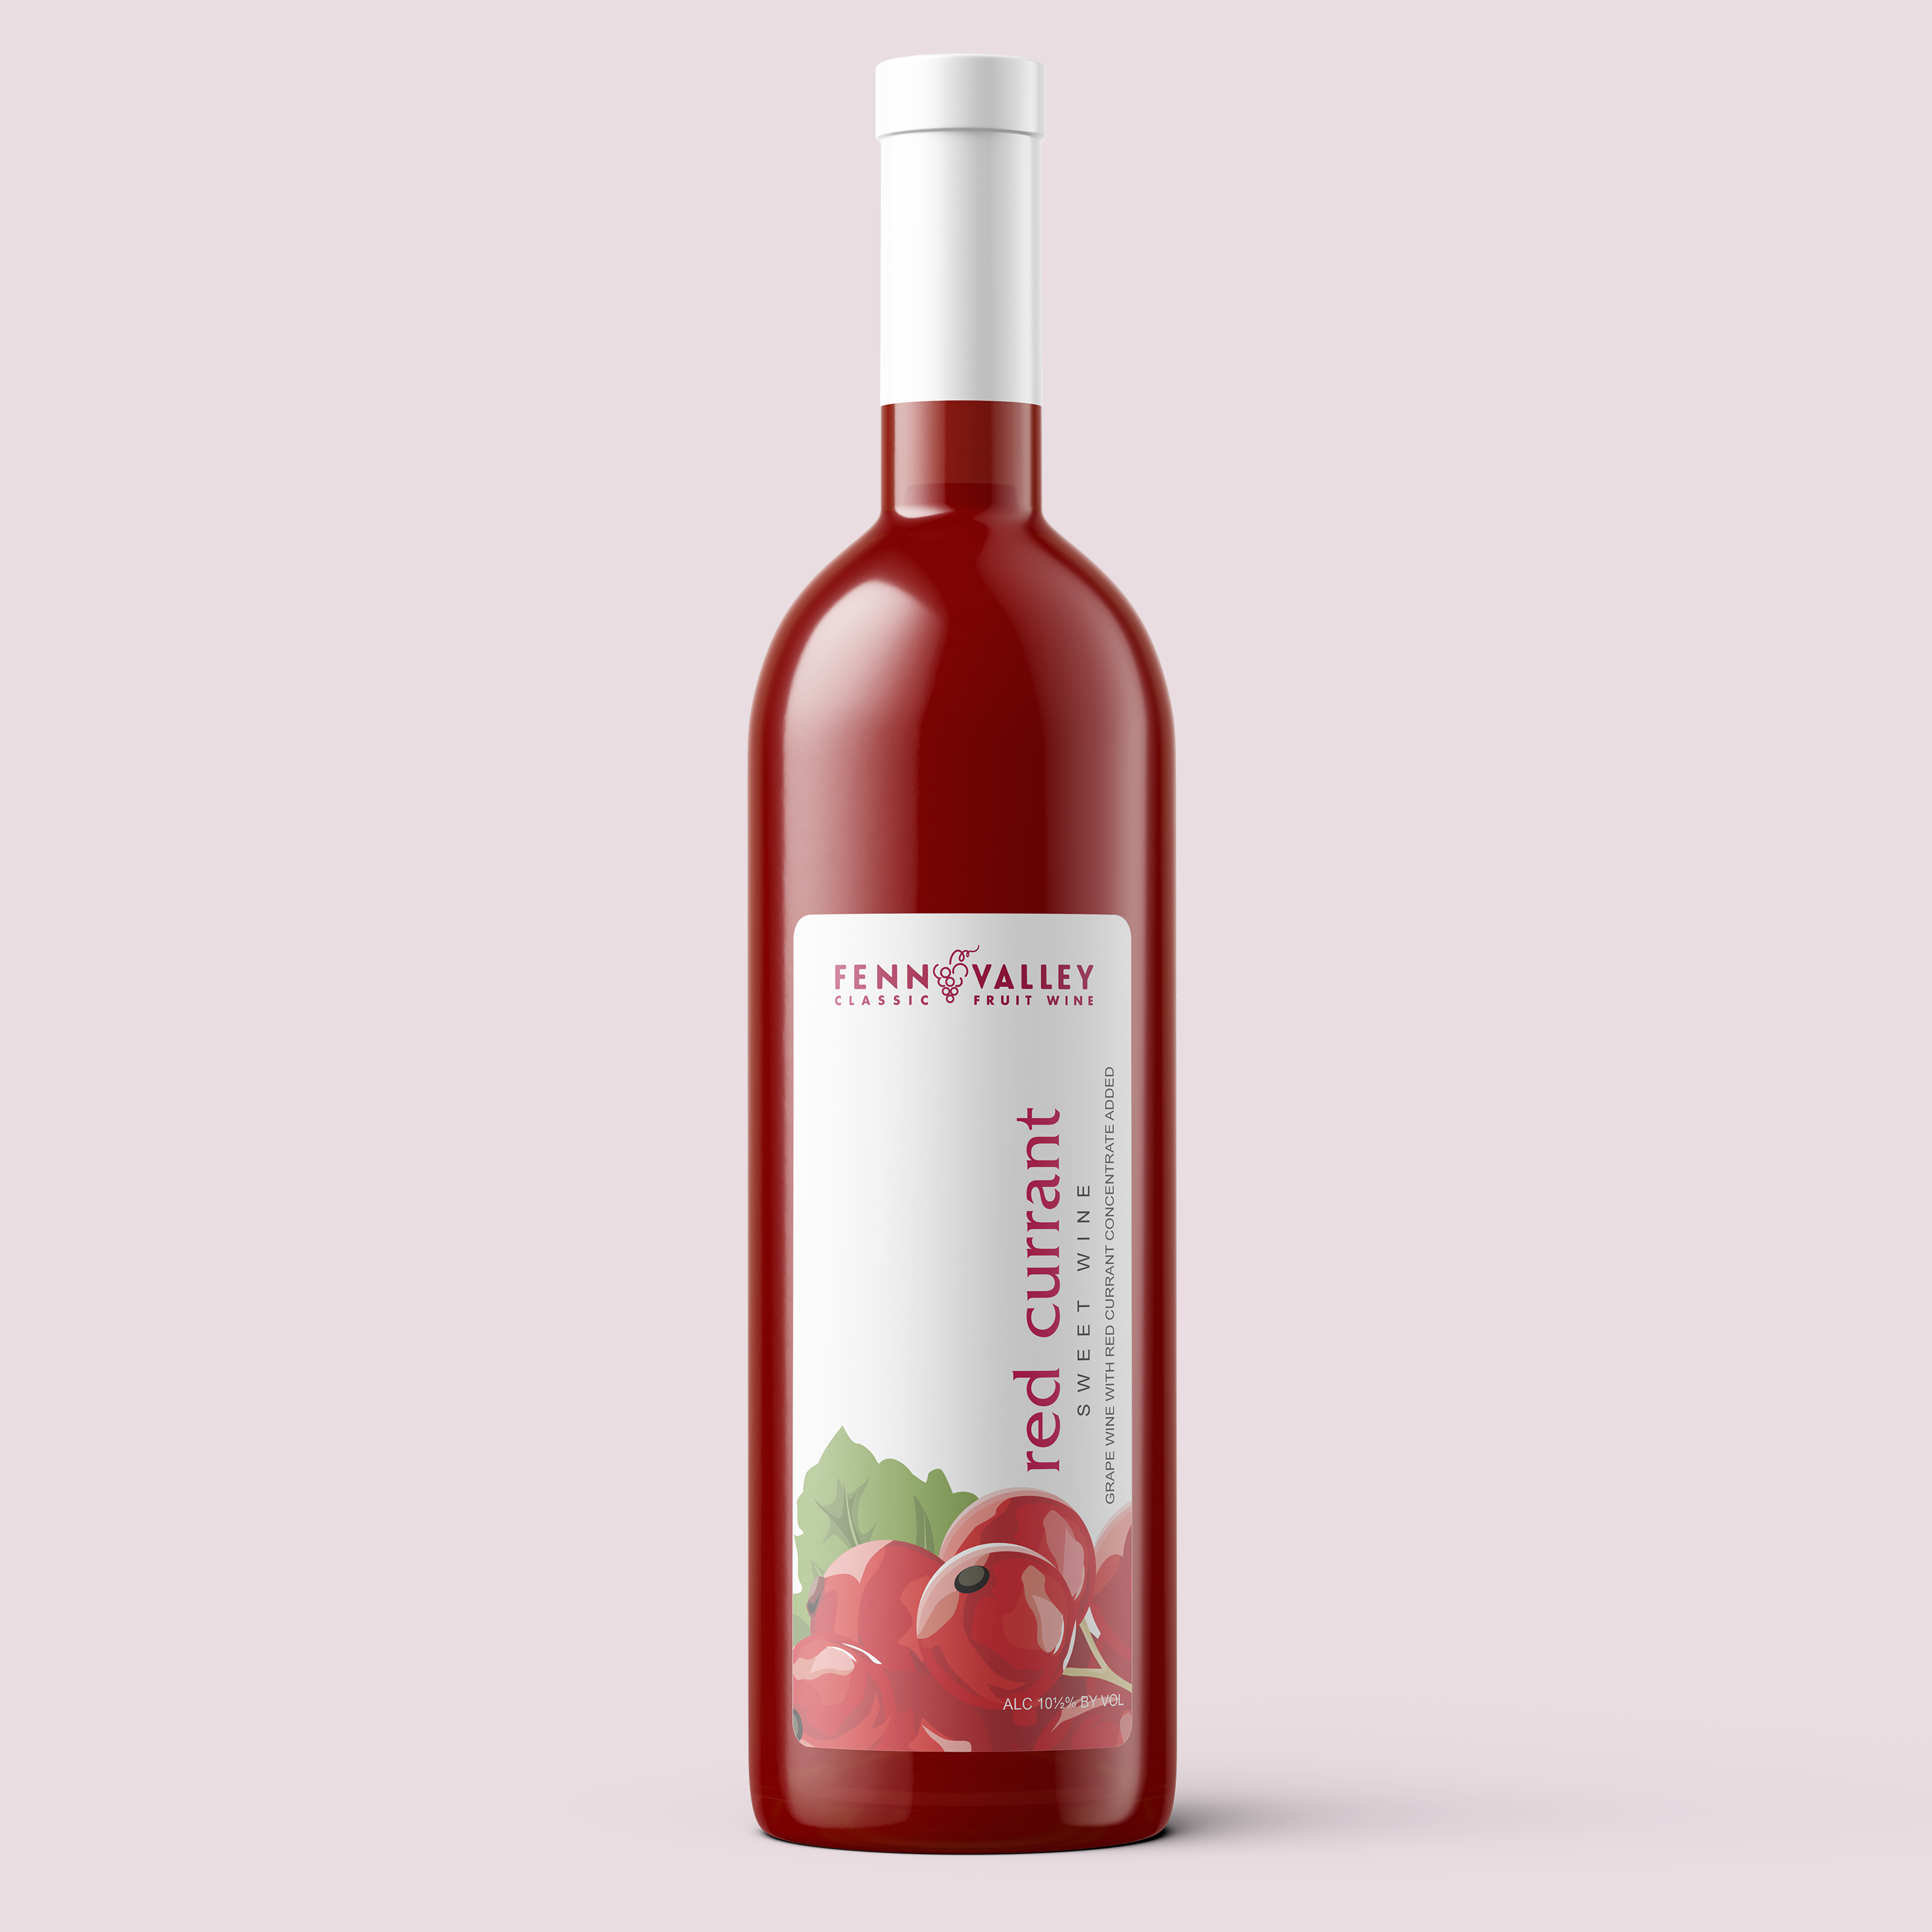 Currant Wine – Fenn